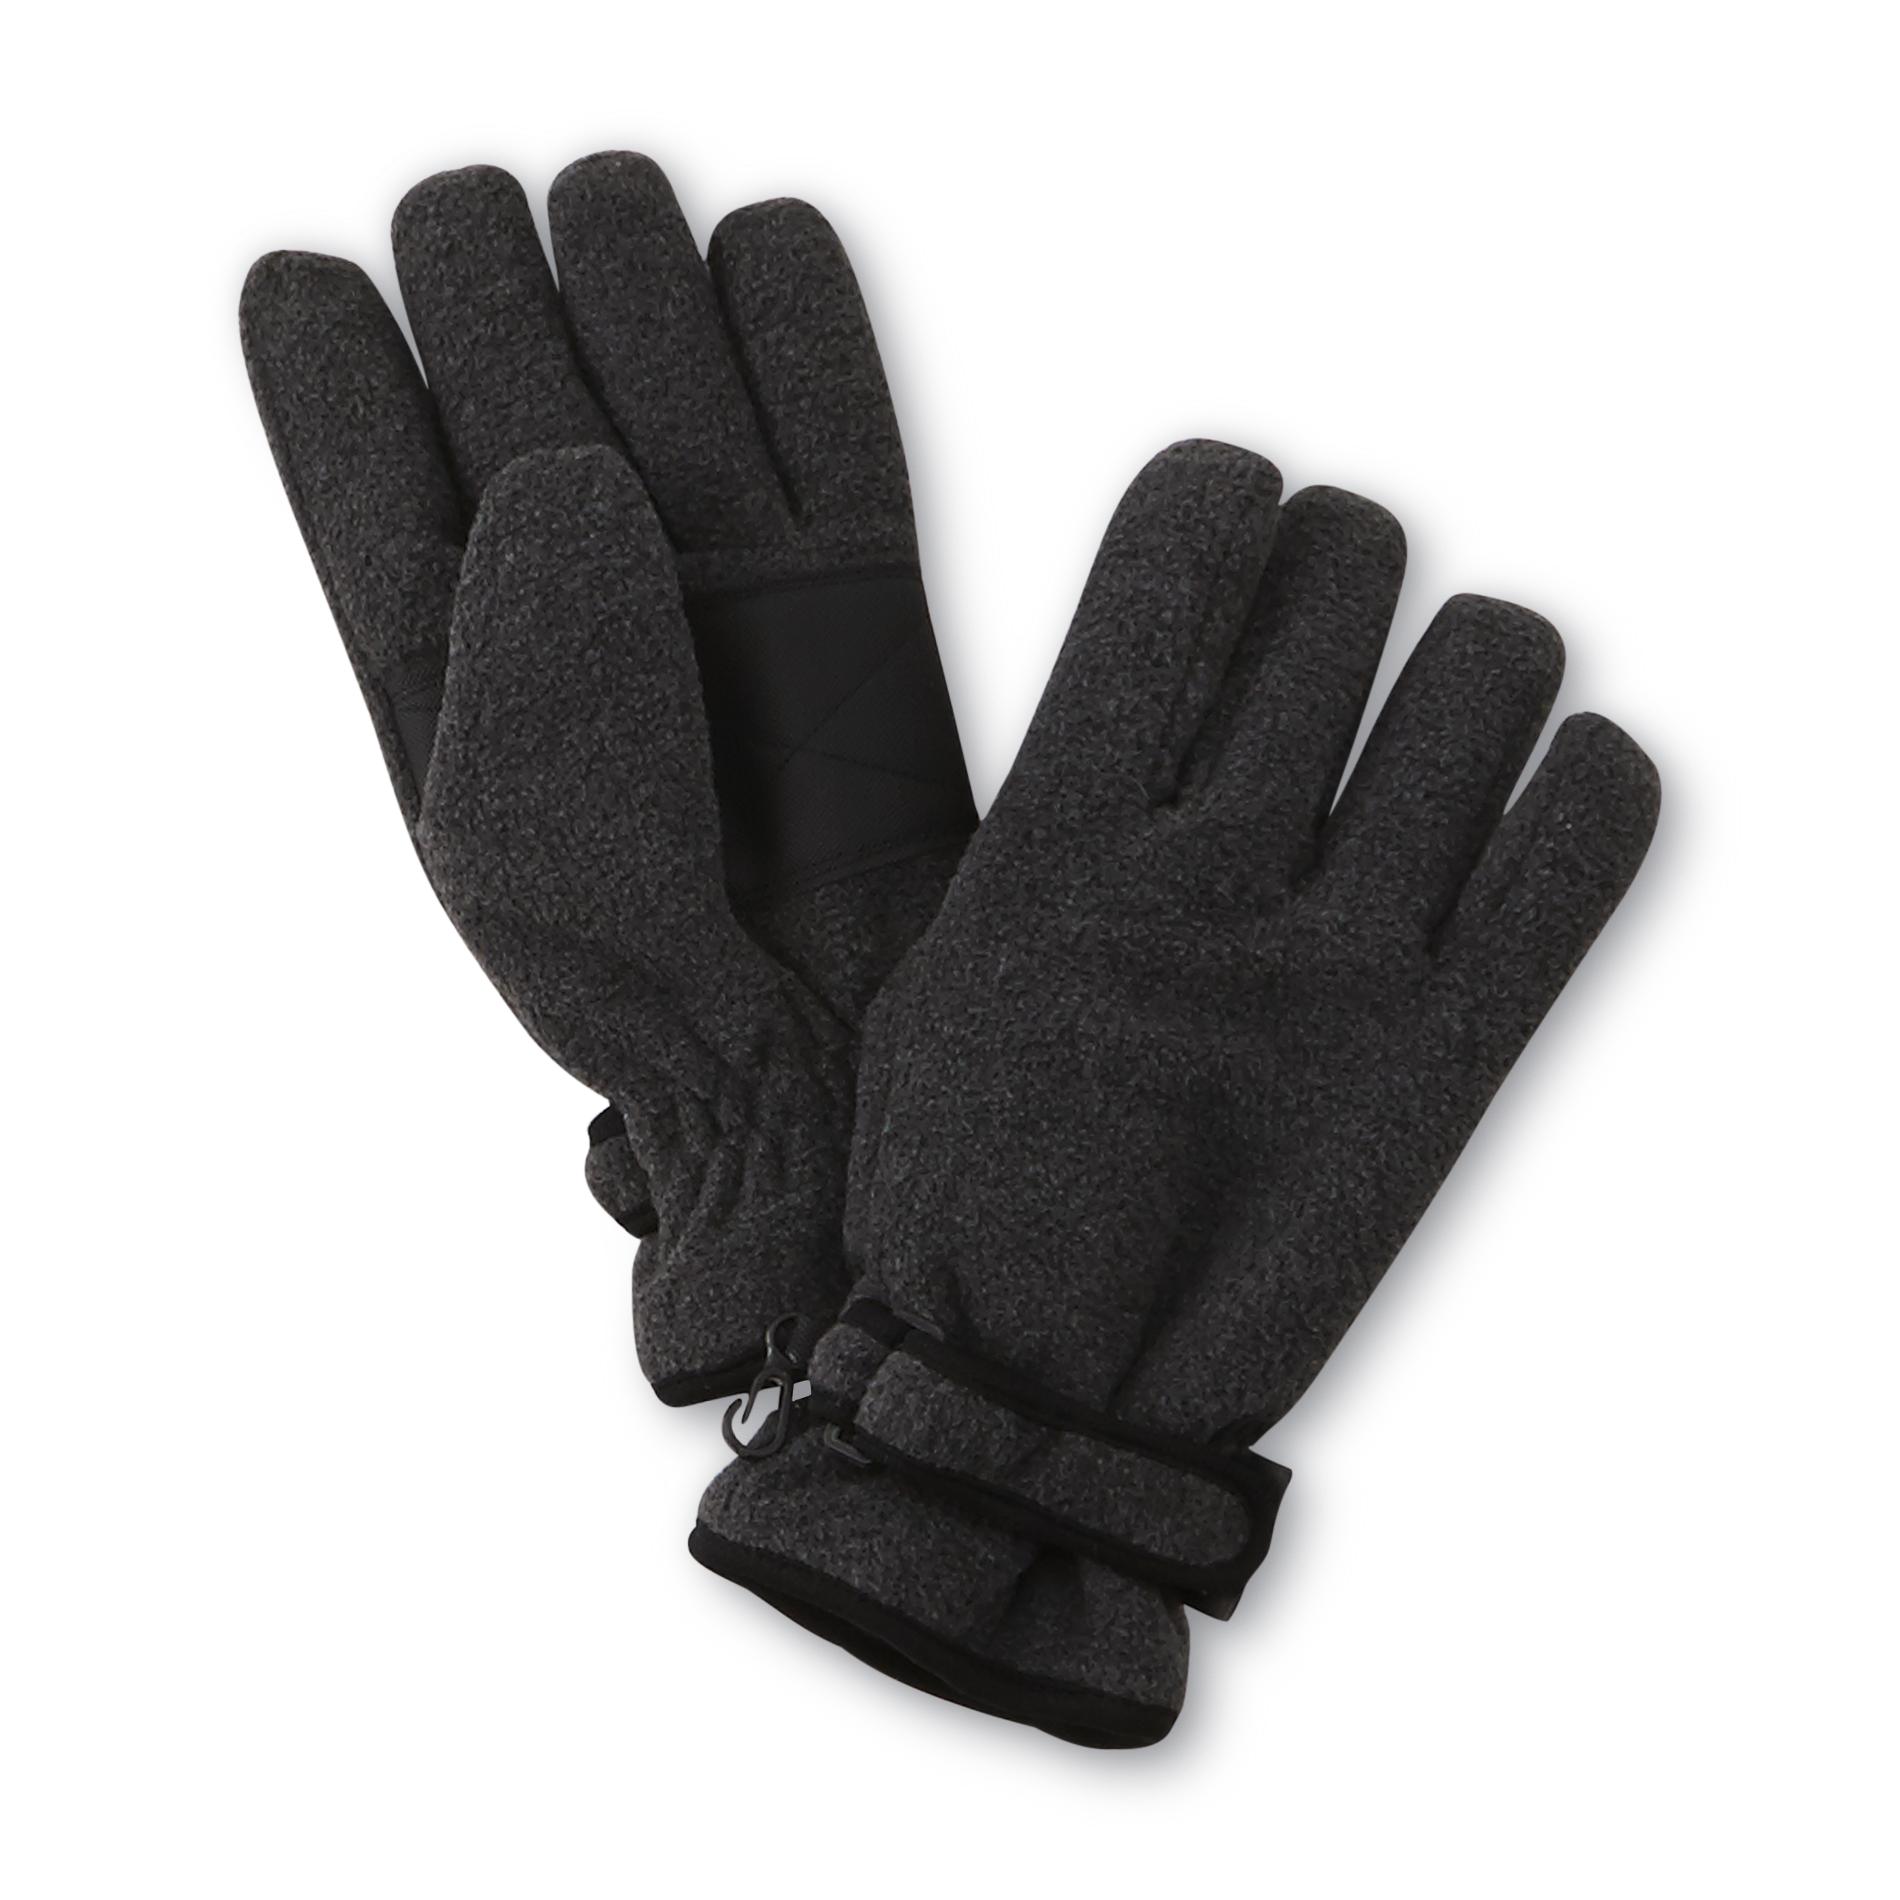 NordicTrack Men's Insulated Fleece Gloves